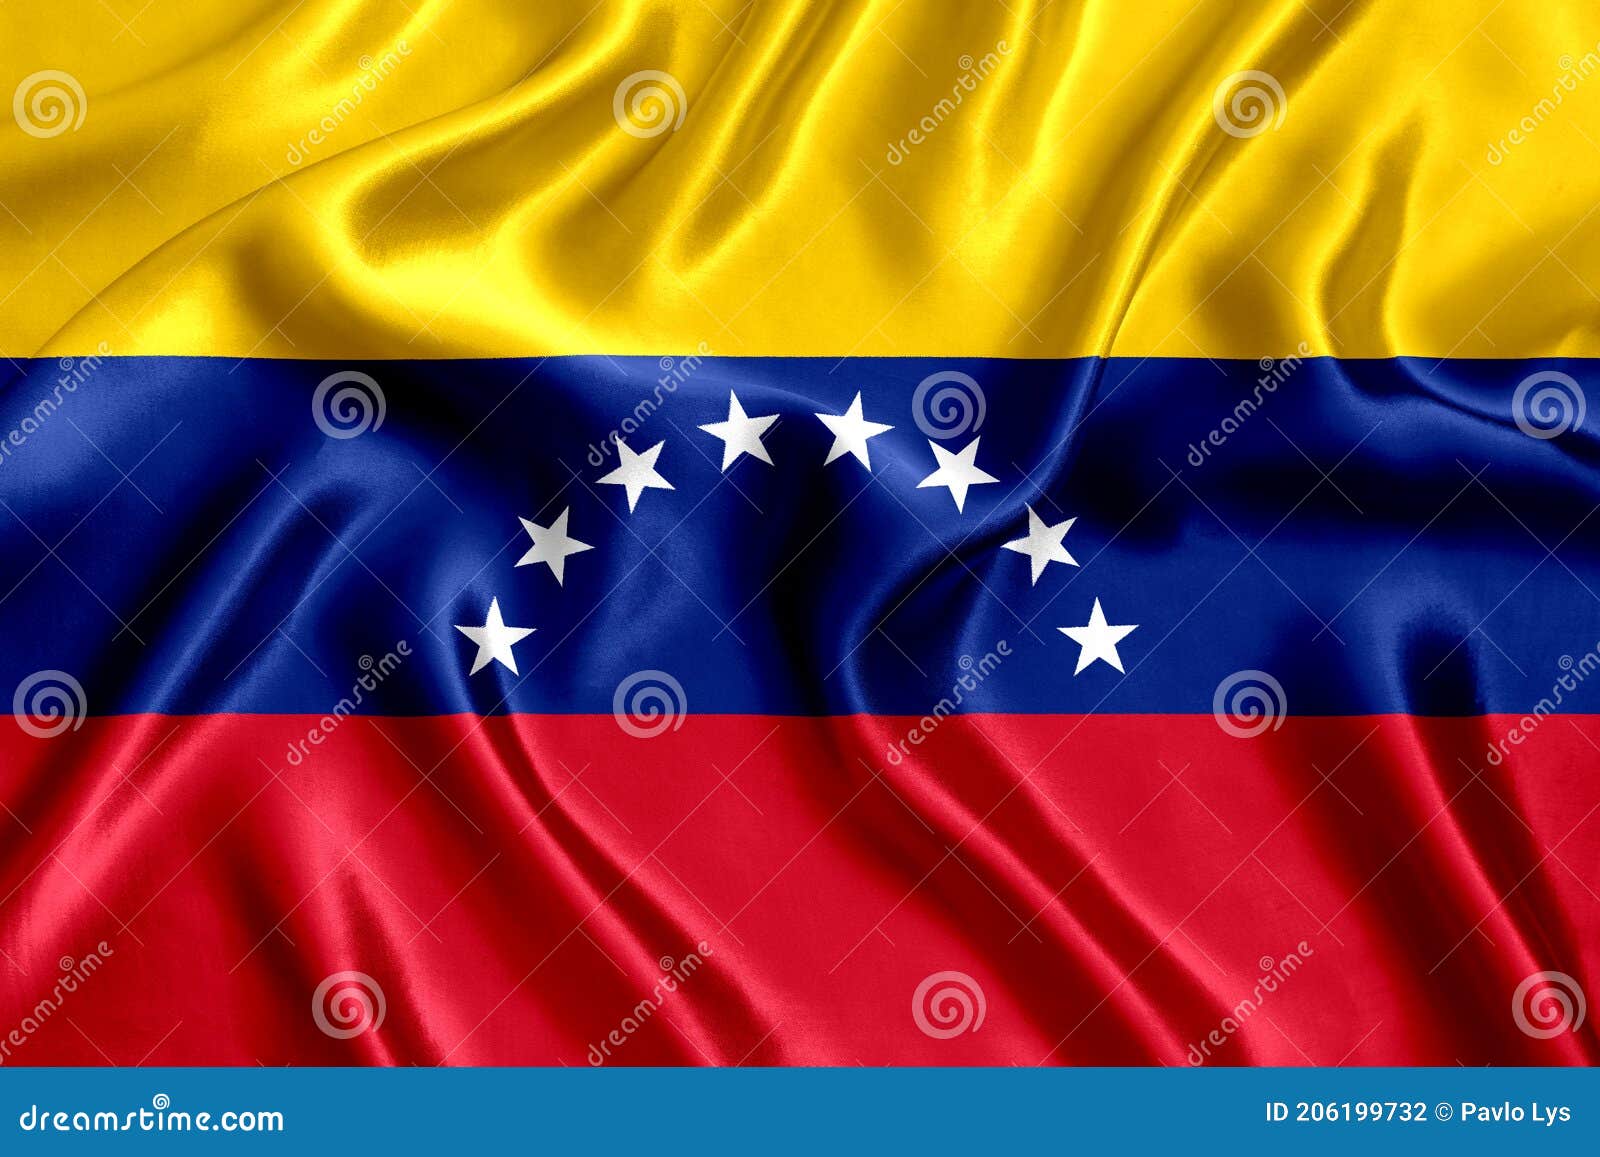 flag of venezuela silk close-up